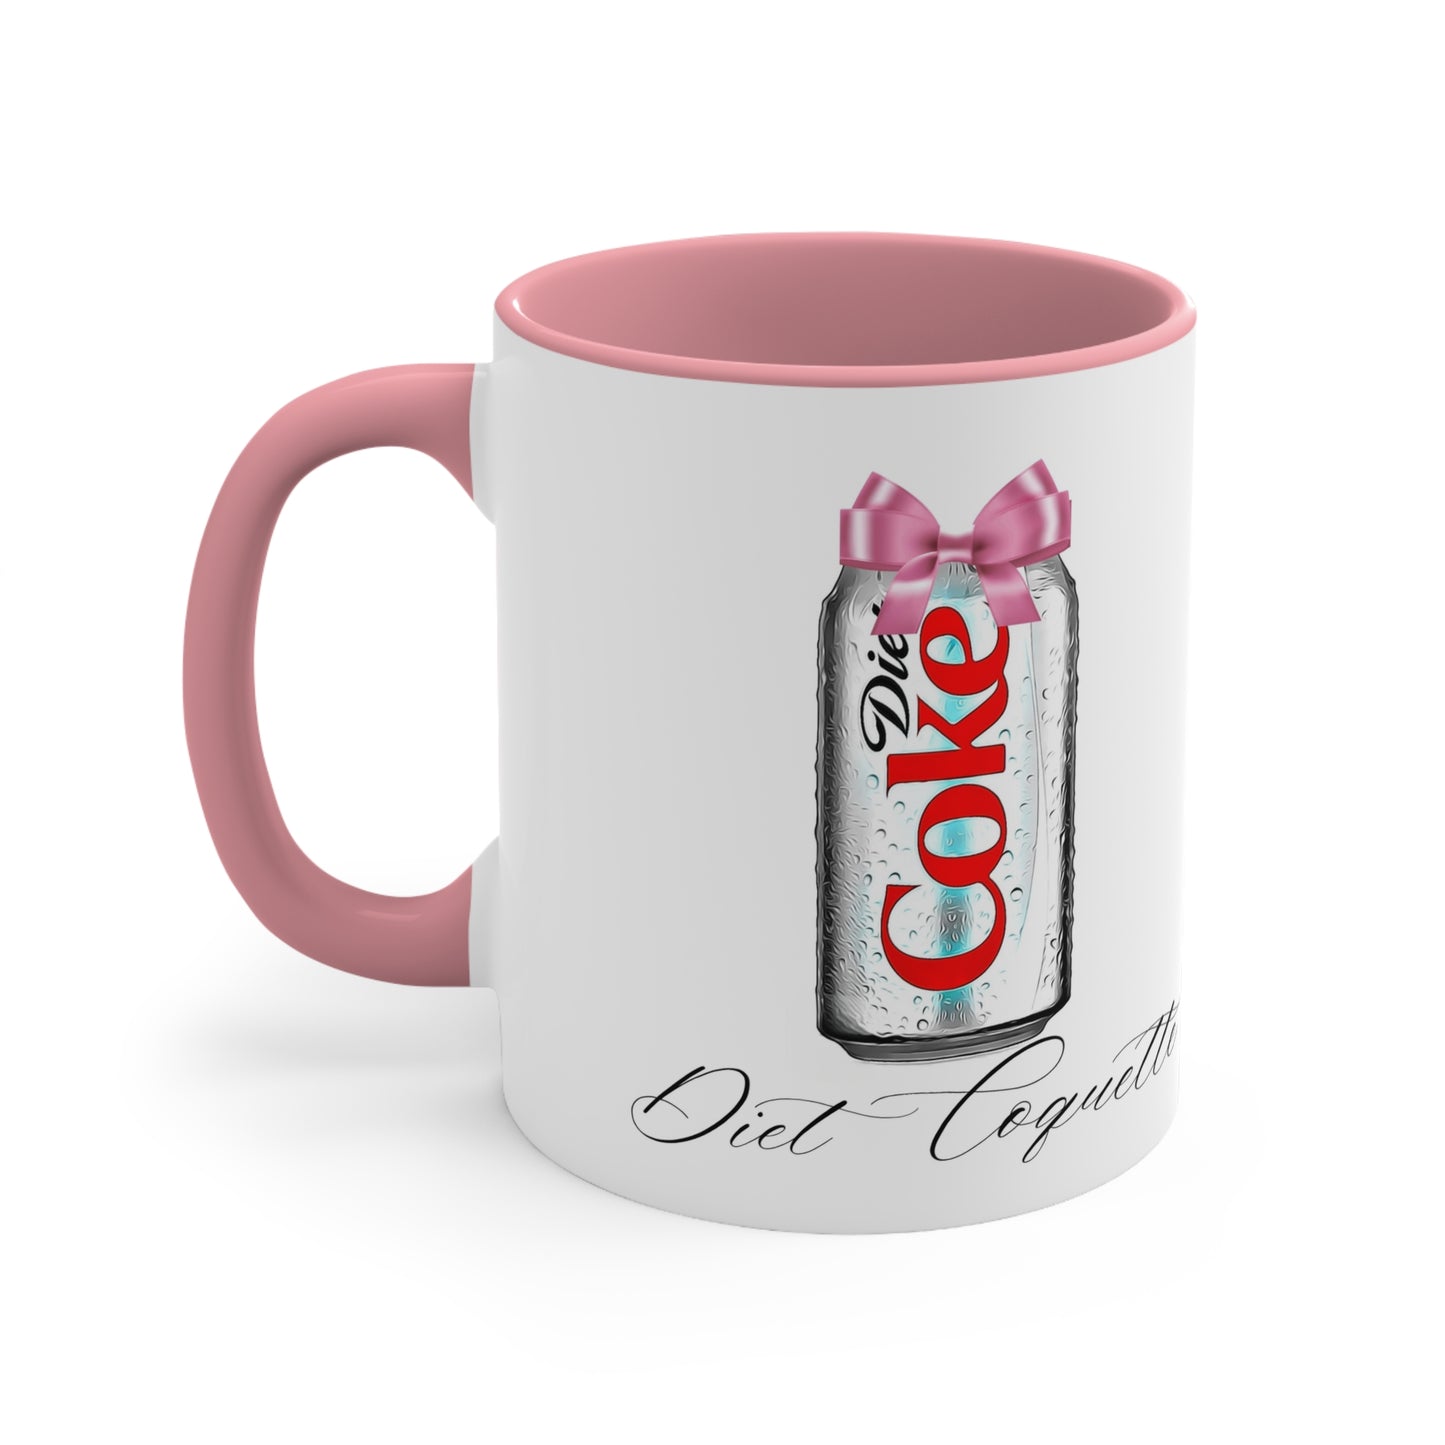 Diet Coquette Ceramic 11 oz Mug | Diet Coke Coquette Mug | Diet Mtn Dew Coquette Mug | Diet Dr Pepper Coquette